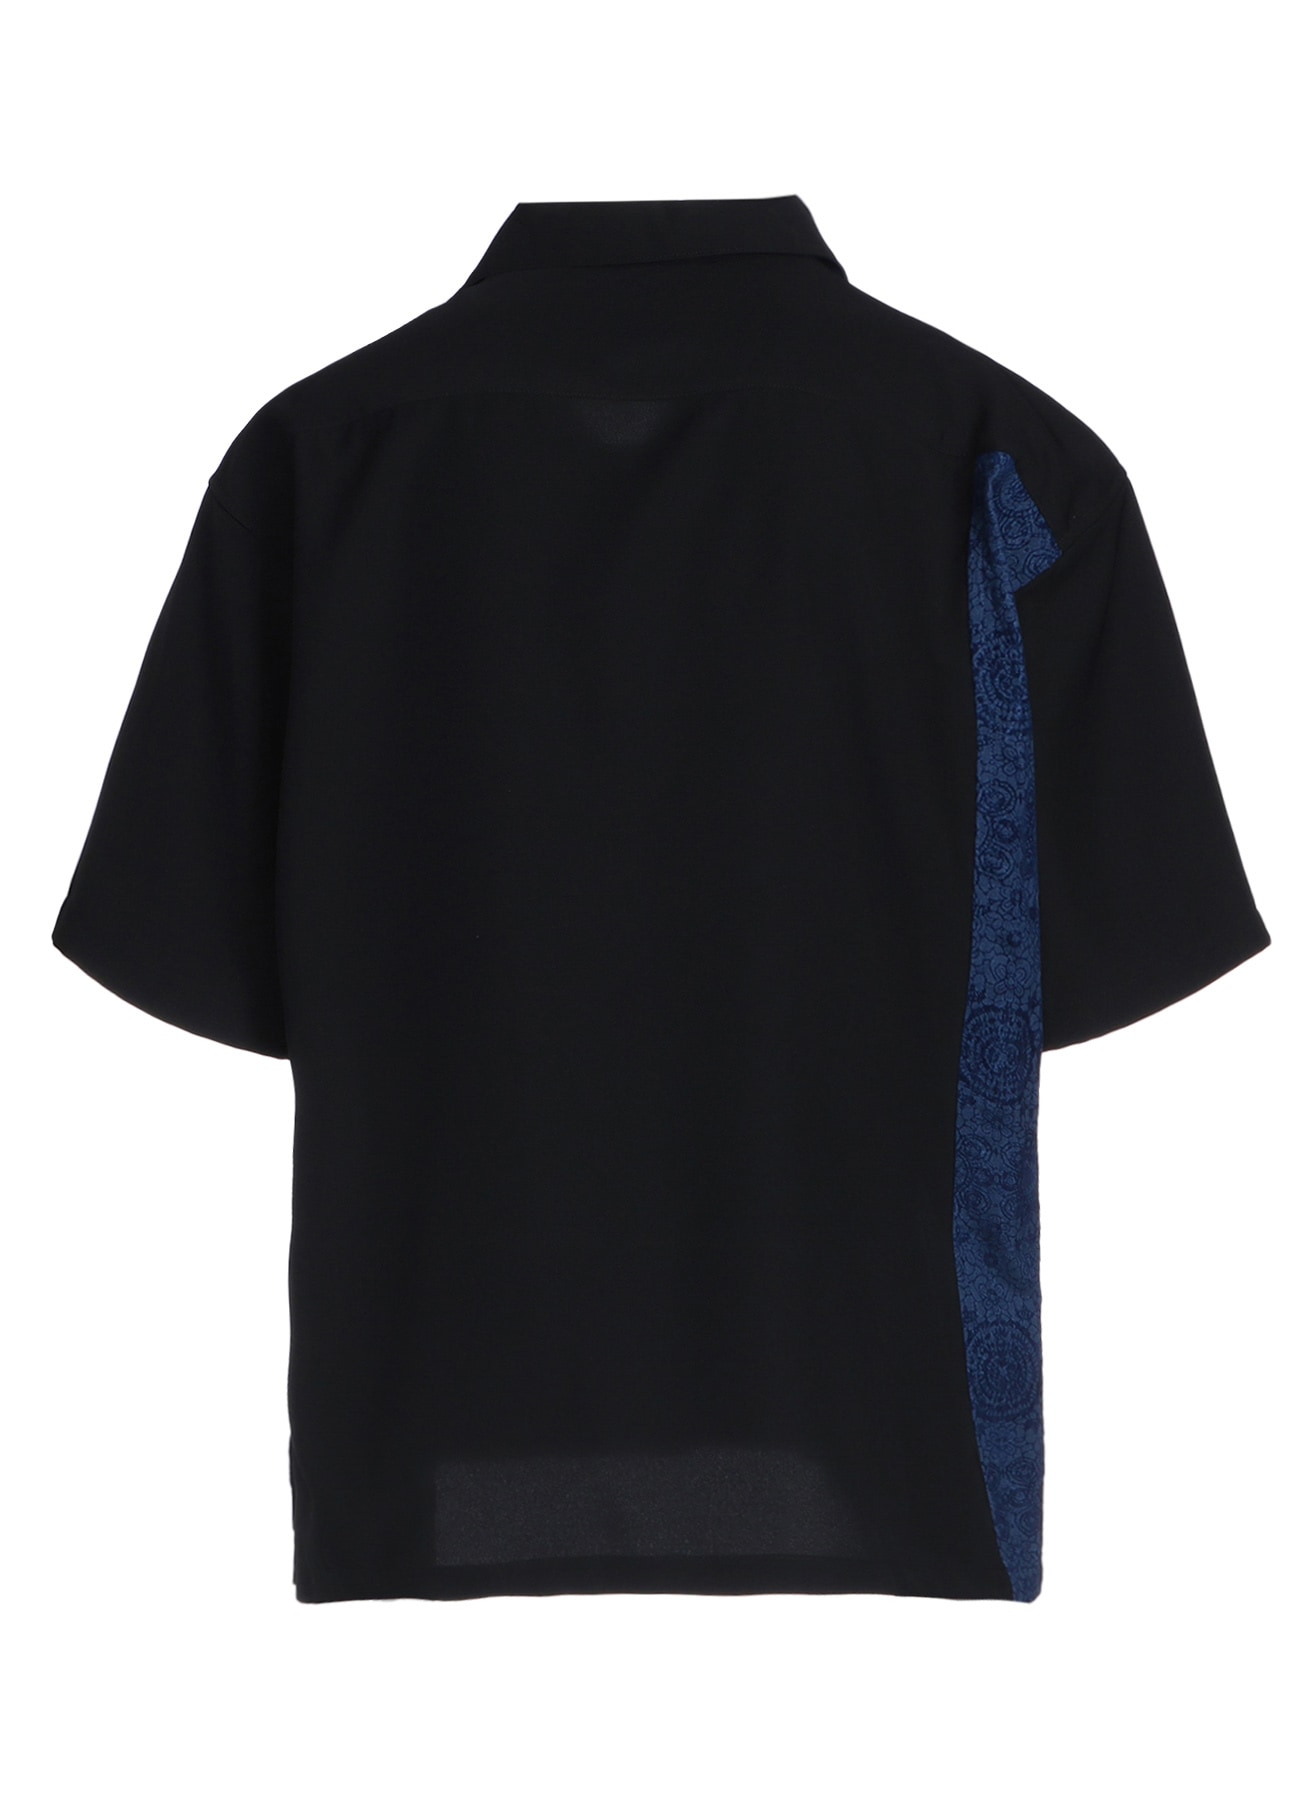 GABARDINE + MURAL LACE FADED FLOCKY LINEN CLOTH OPEN-COLLAR SHIRT